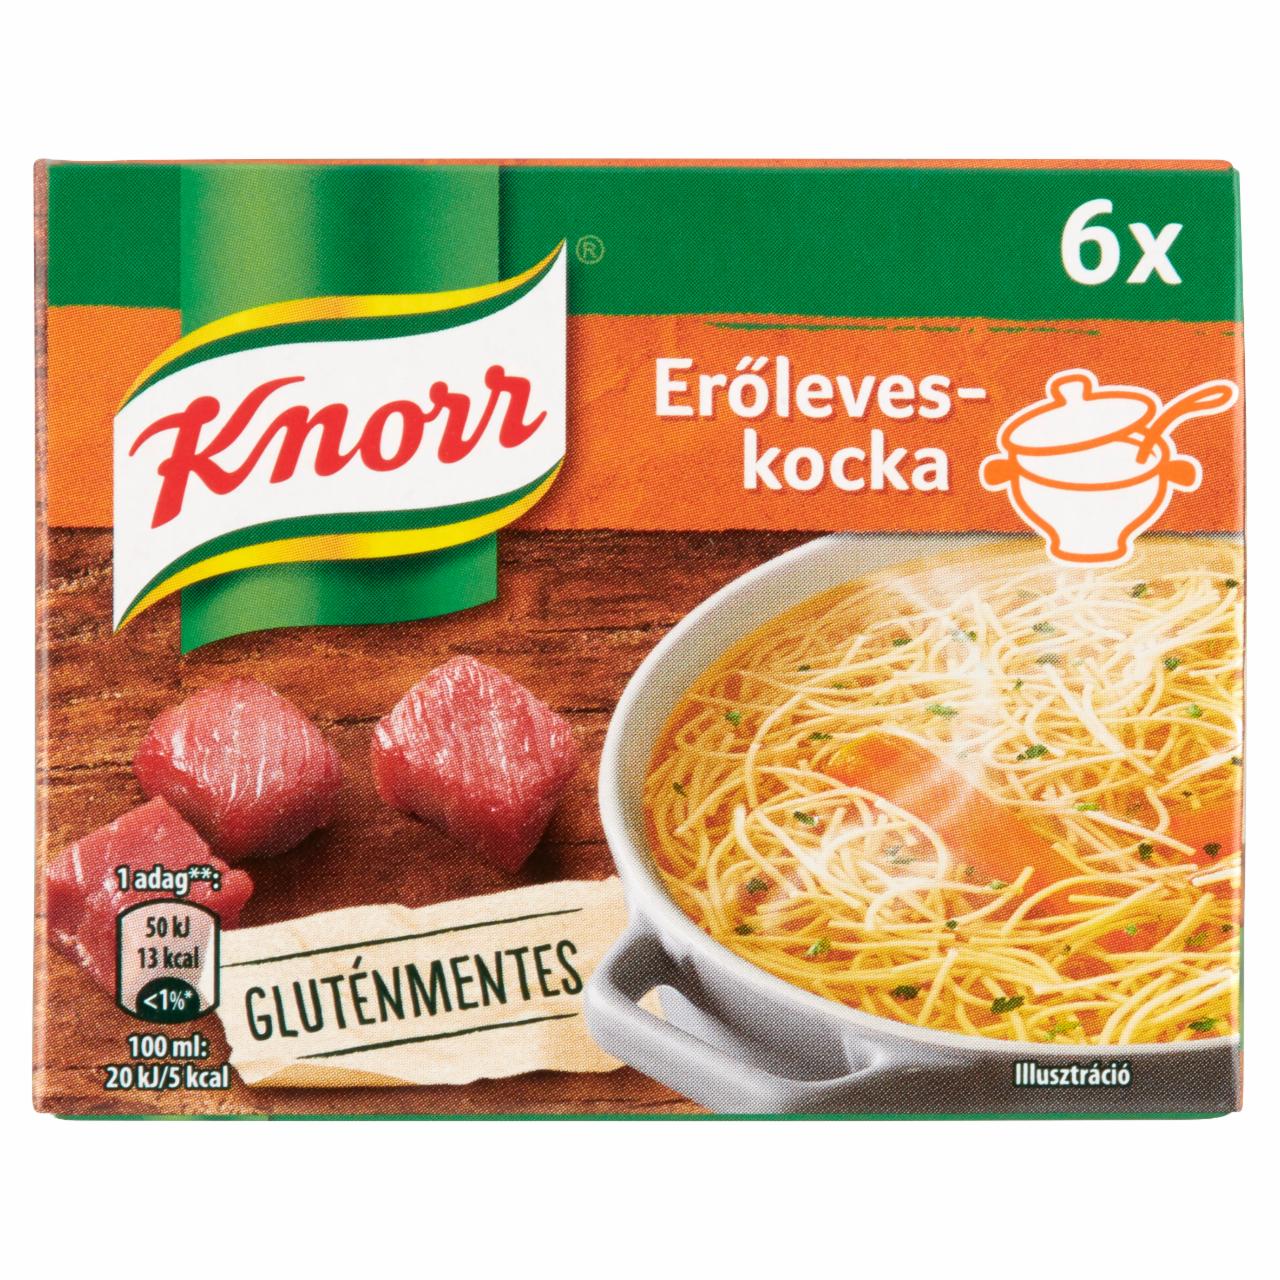 Képek - Knorr erőleveskocka 6 x 10 g (60 g)